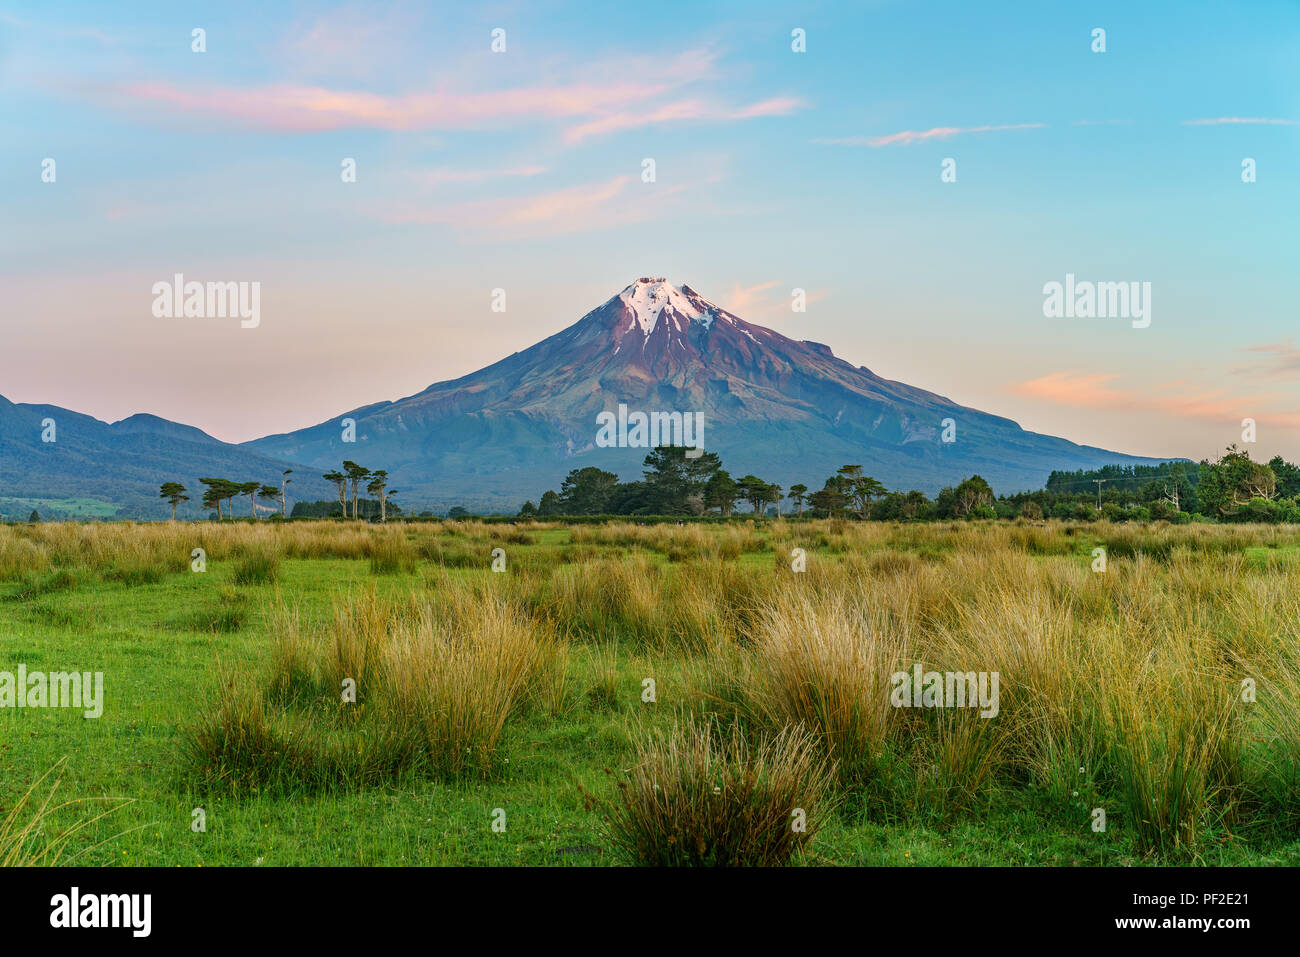 lush grass,trees and the cone volcano mount taranaki, new zealand Stock Photo